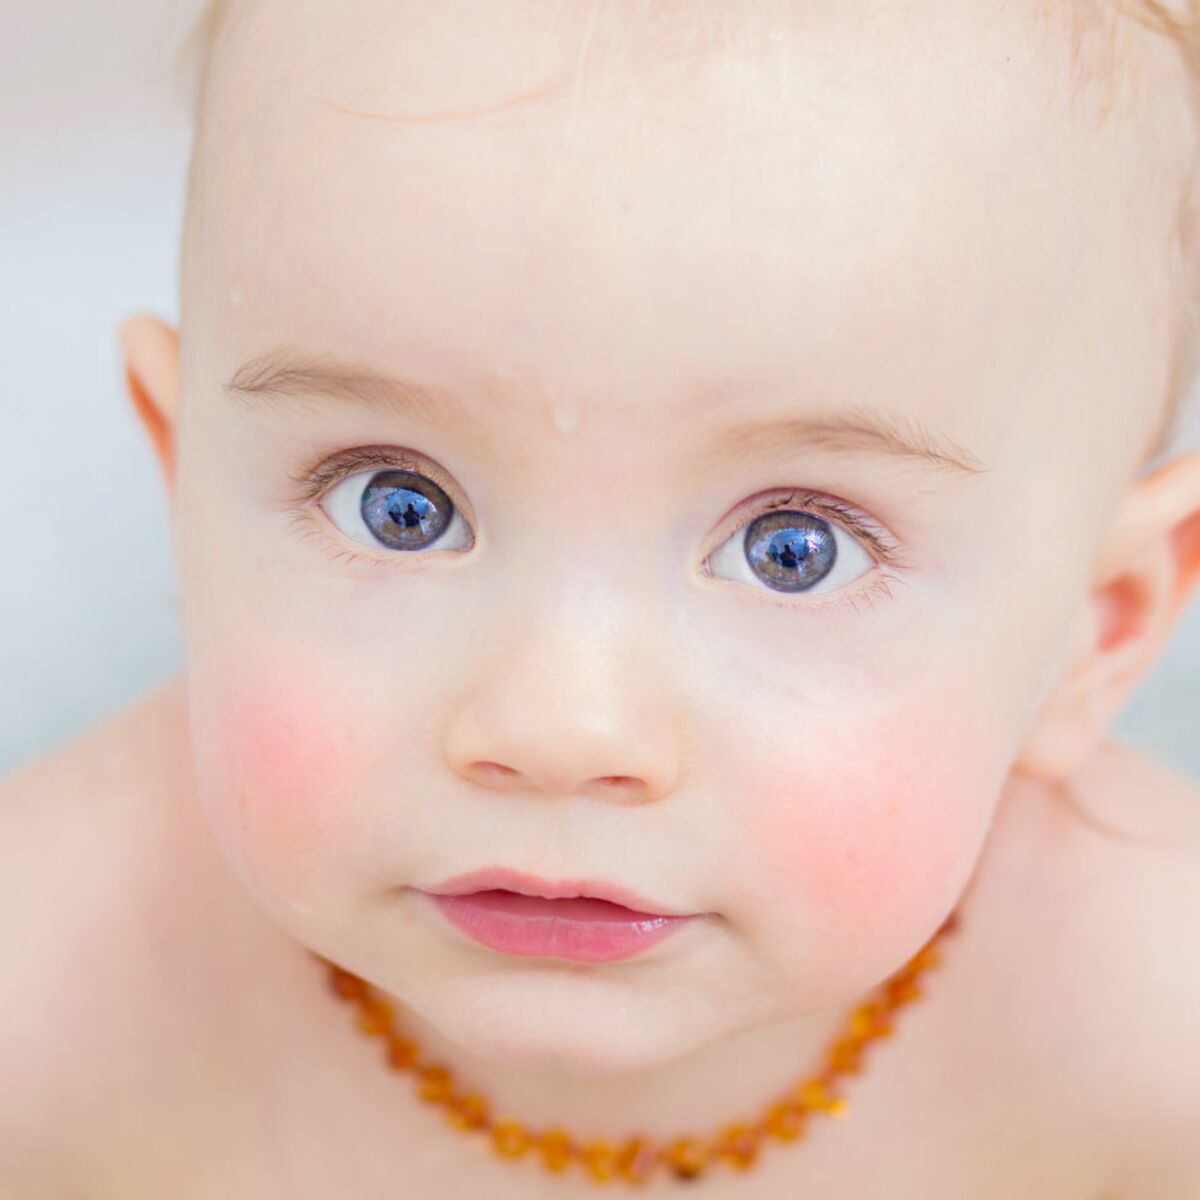 Les colliers d'ambre contre les douleurs des nourrissons : miracle ou  arnaque ?